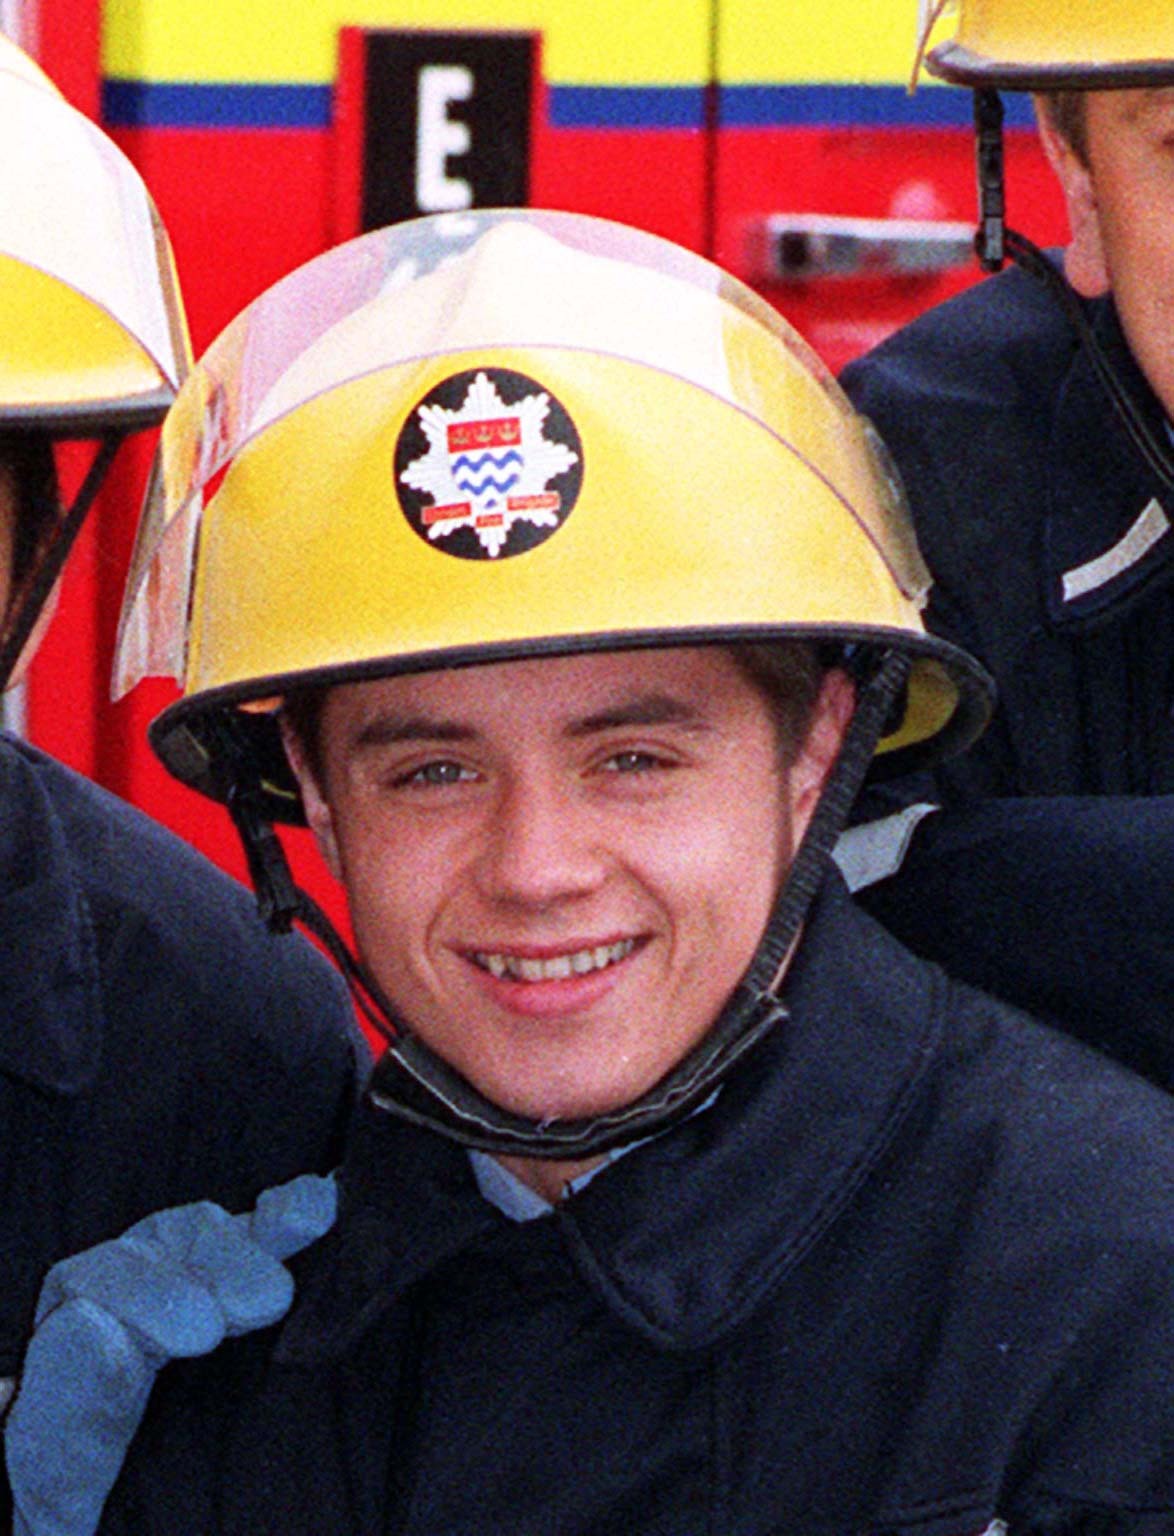 John Alford in London's Burning in 1993